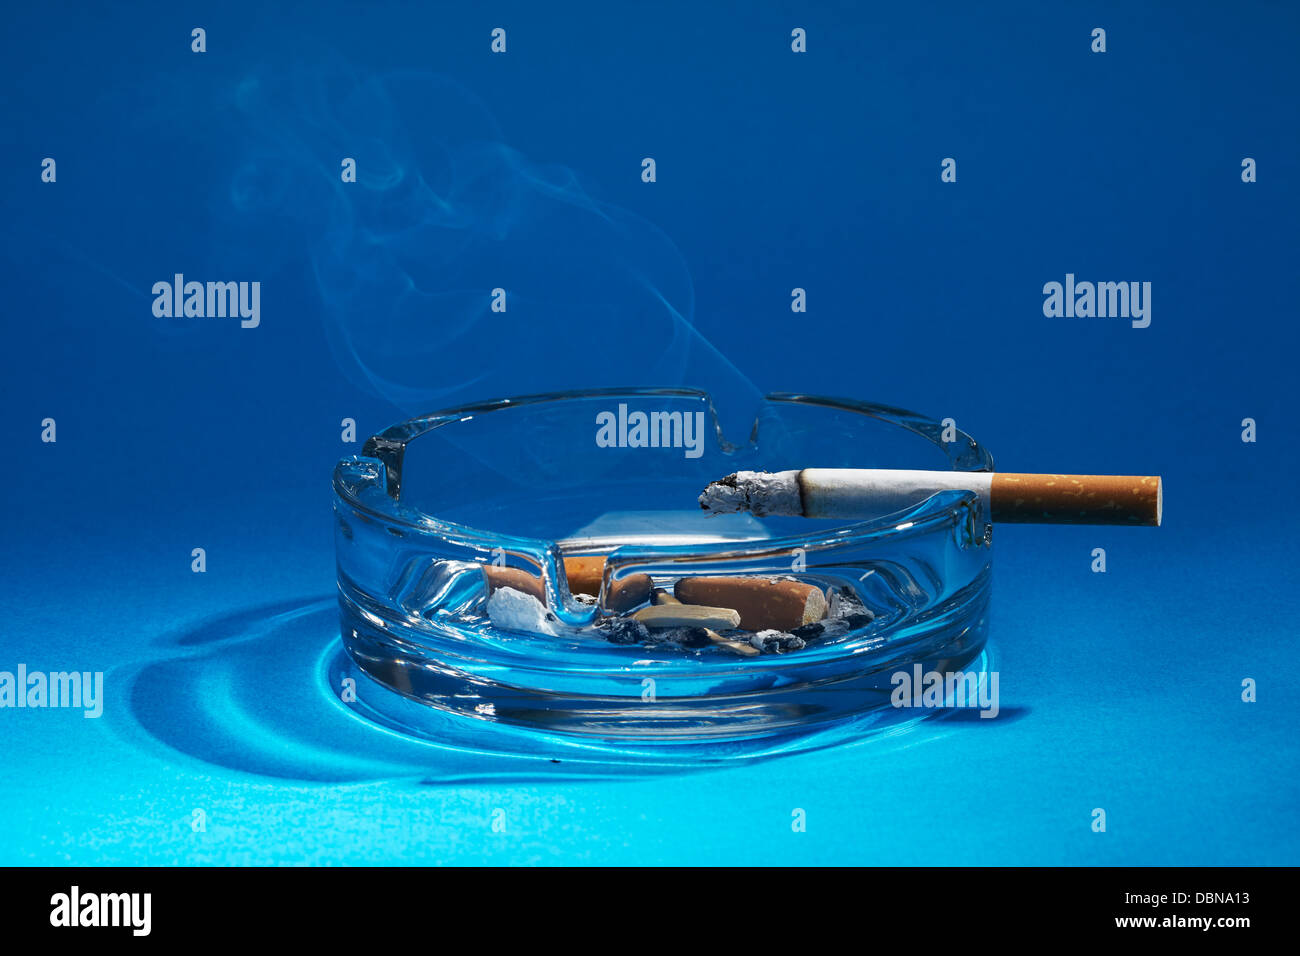 Ashtray with burning cigarettes Stock Photo